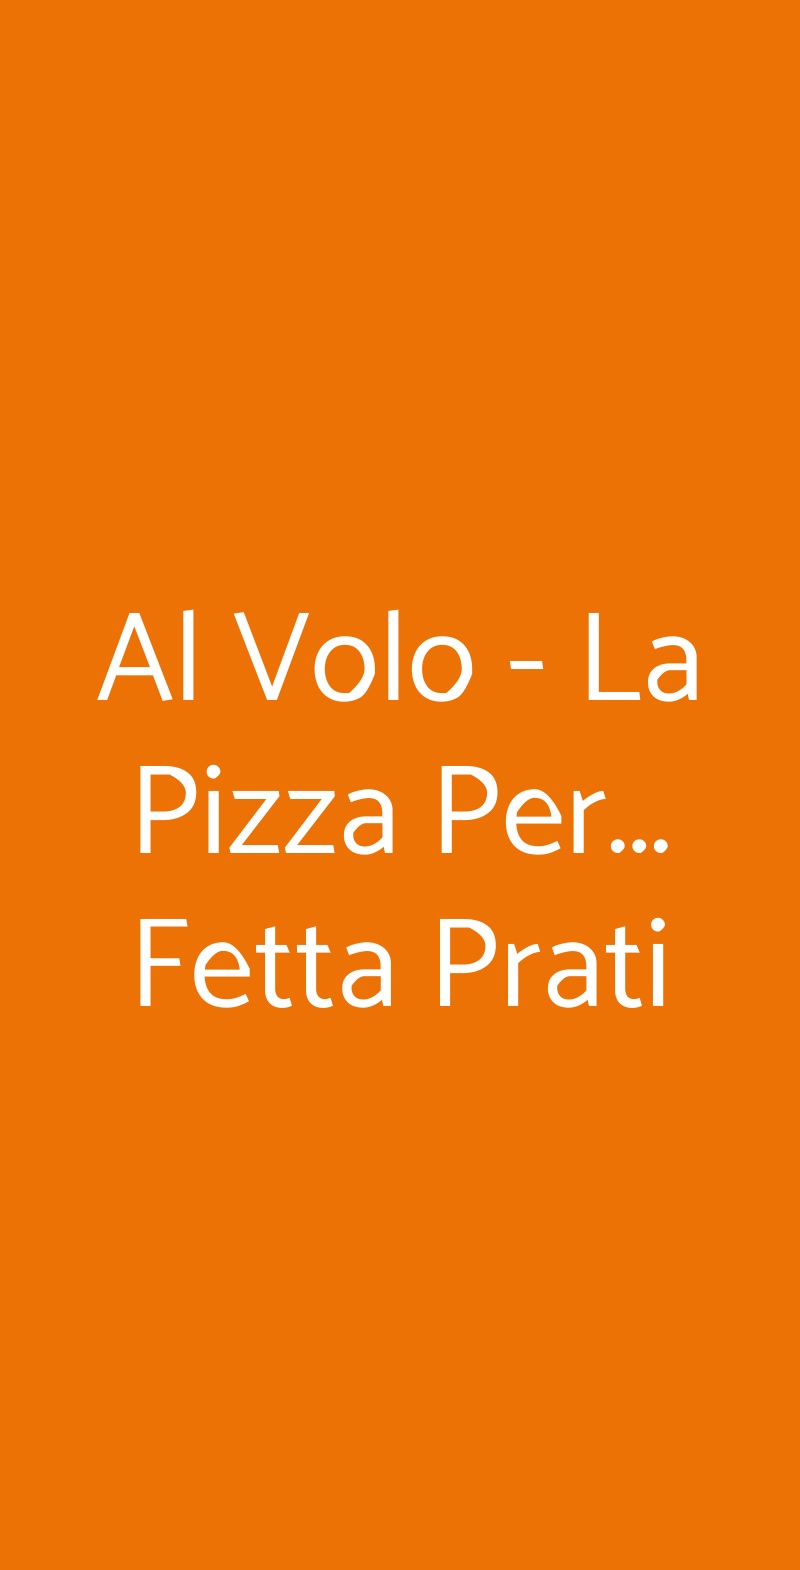 Al Volo - La Pizza Per... Fetta Prati Roma menù 1 pagina